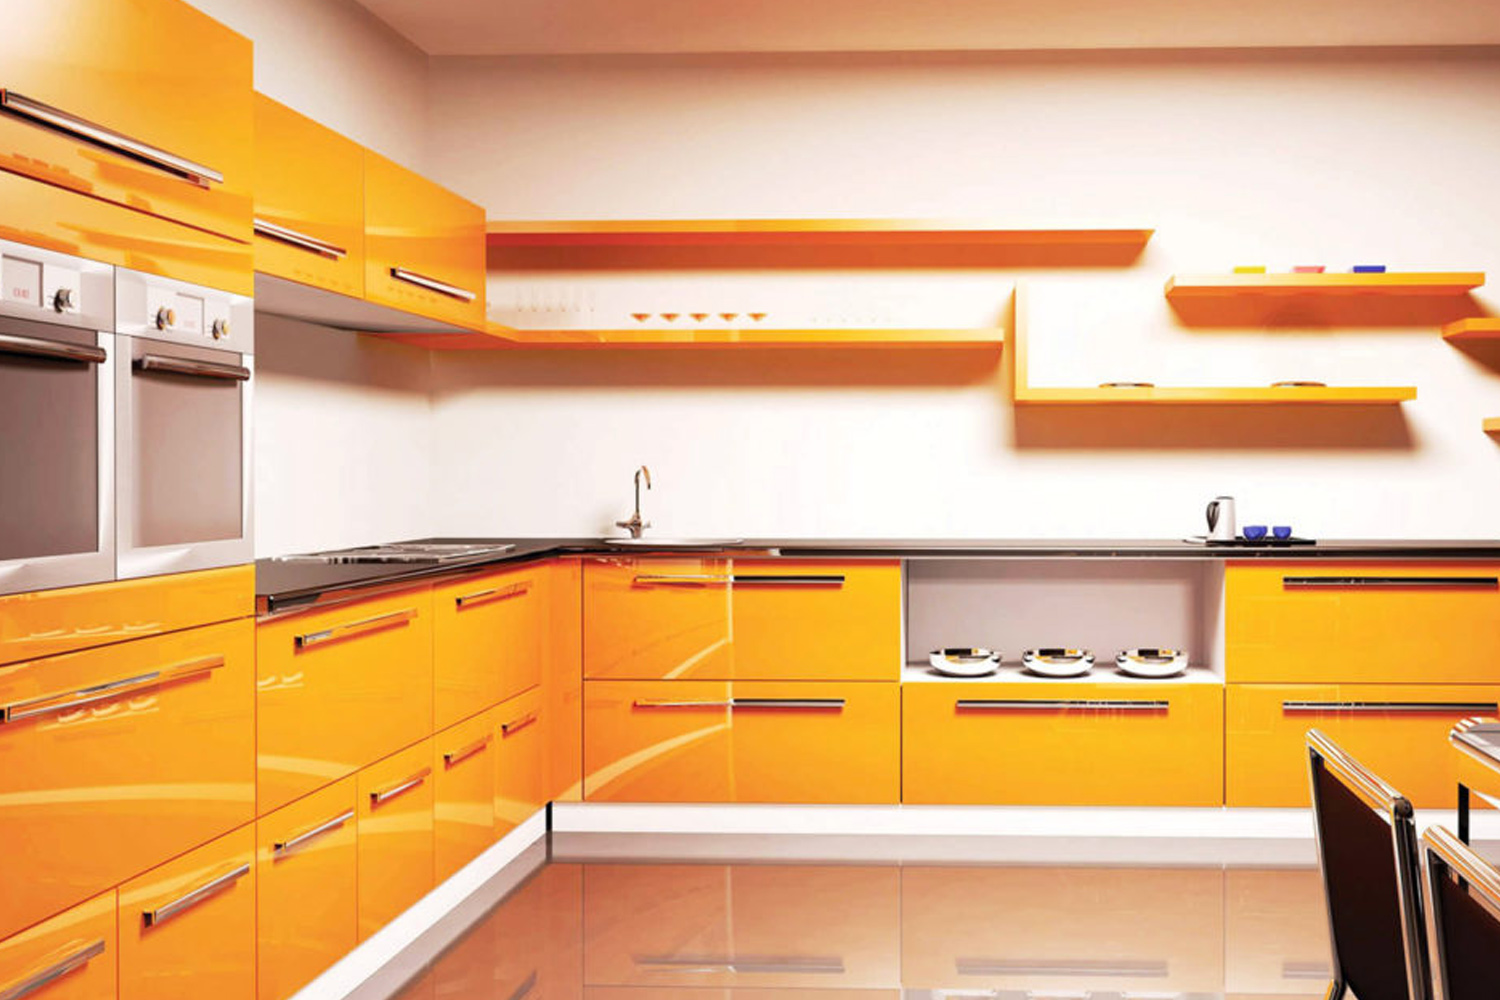 Купить желтую кухню. Кухня из желтого дерева. Оранжевая кухня в интерьере фото. Желтая кухня на белом фоне. Кухни желтые из ламината.